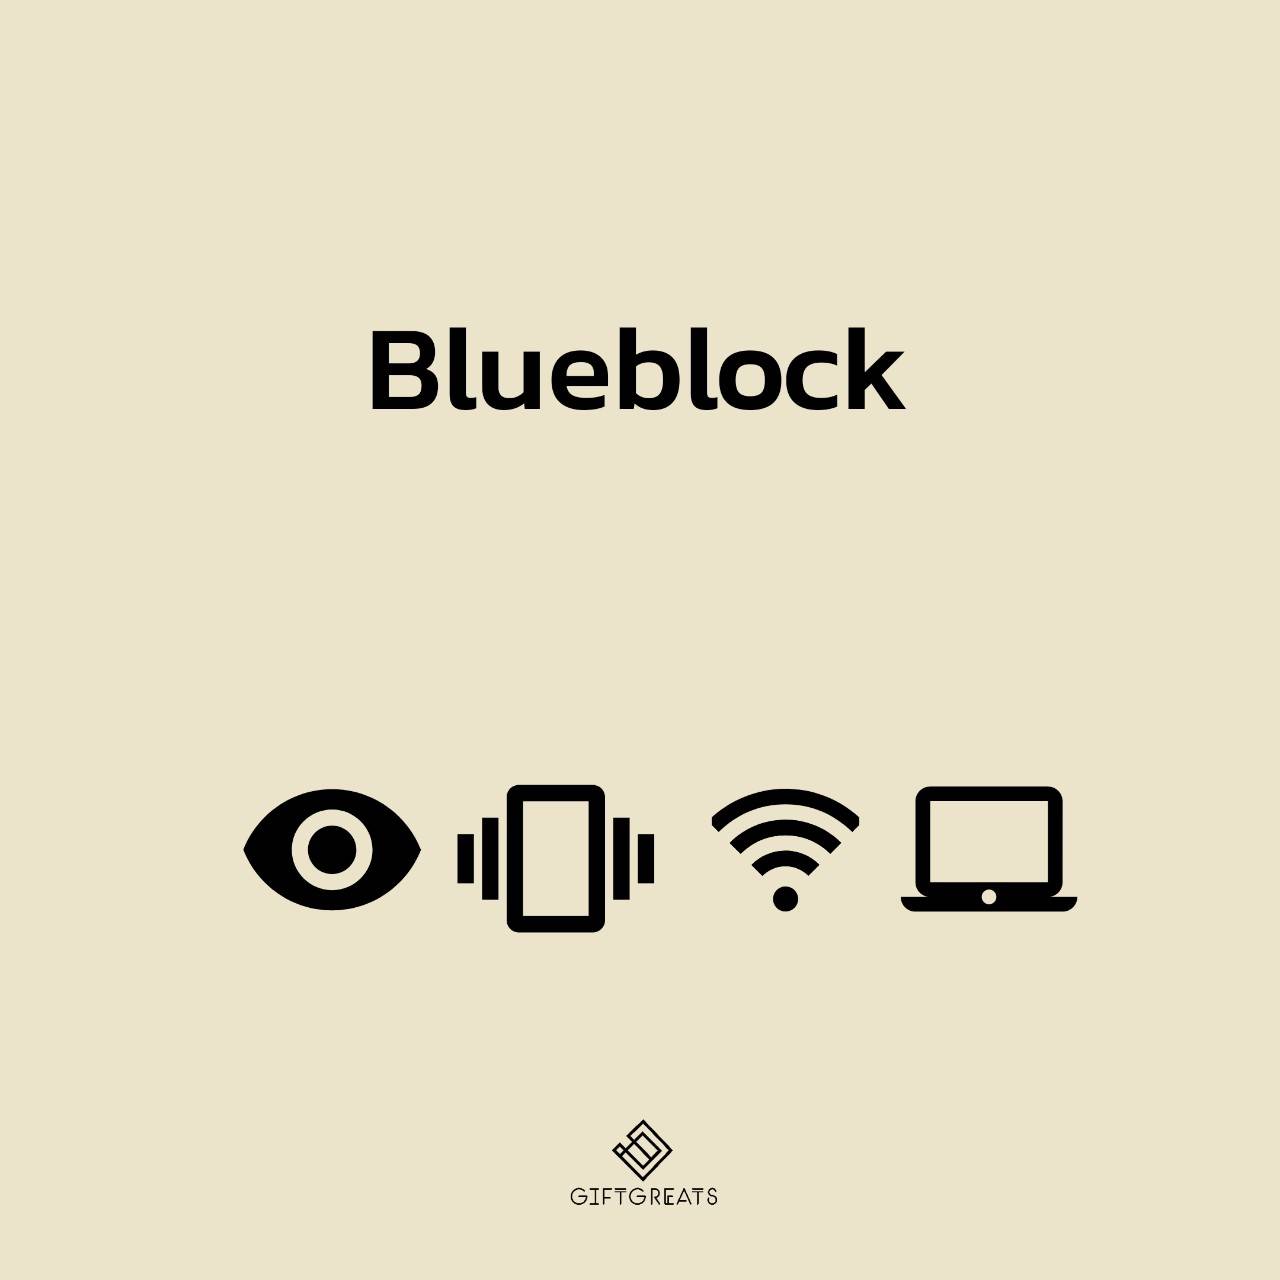 Blueblock-เลนส์กรองแสงสีฟ้า เลนส์สายตา เลนส์บลูถนอมสายตา